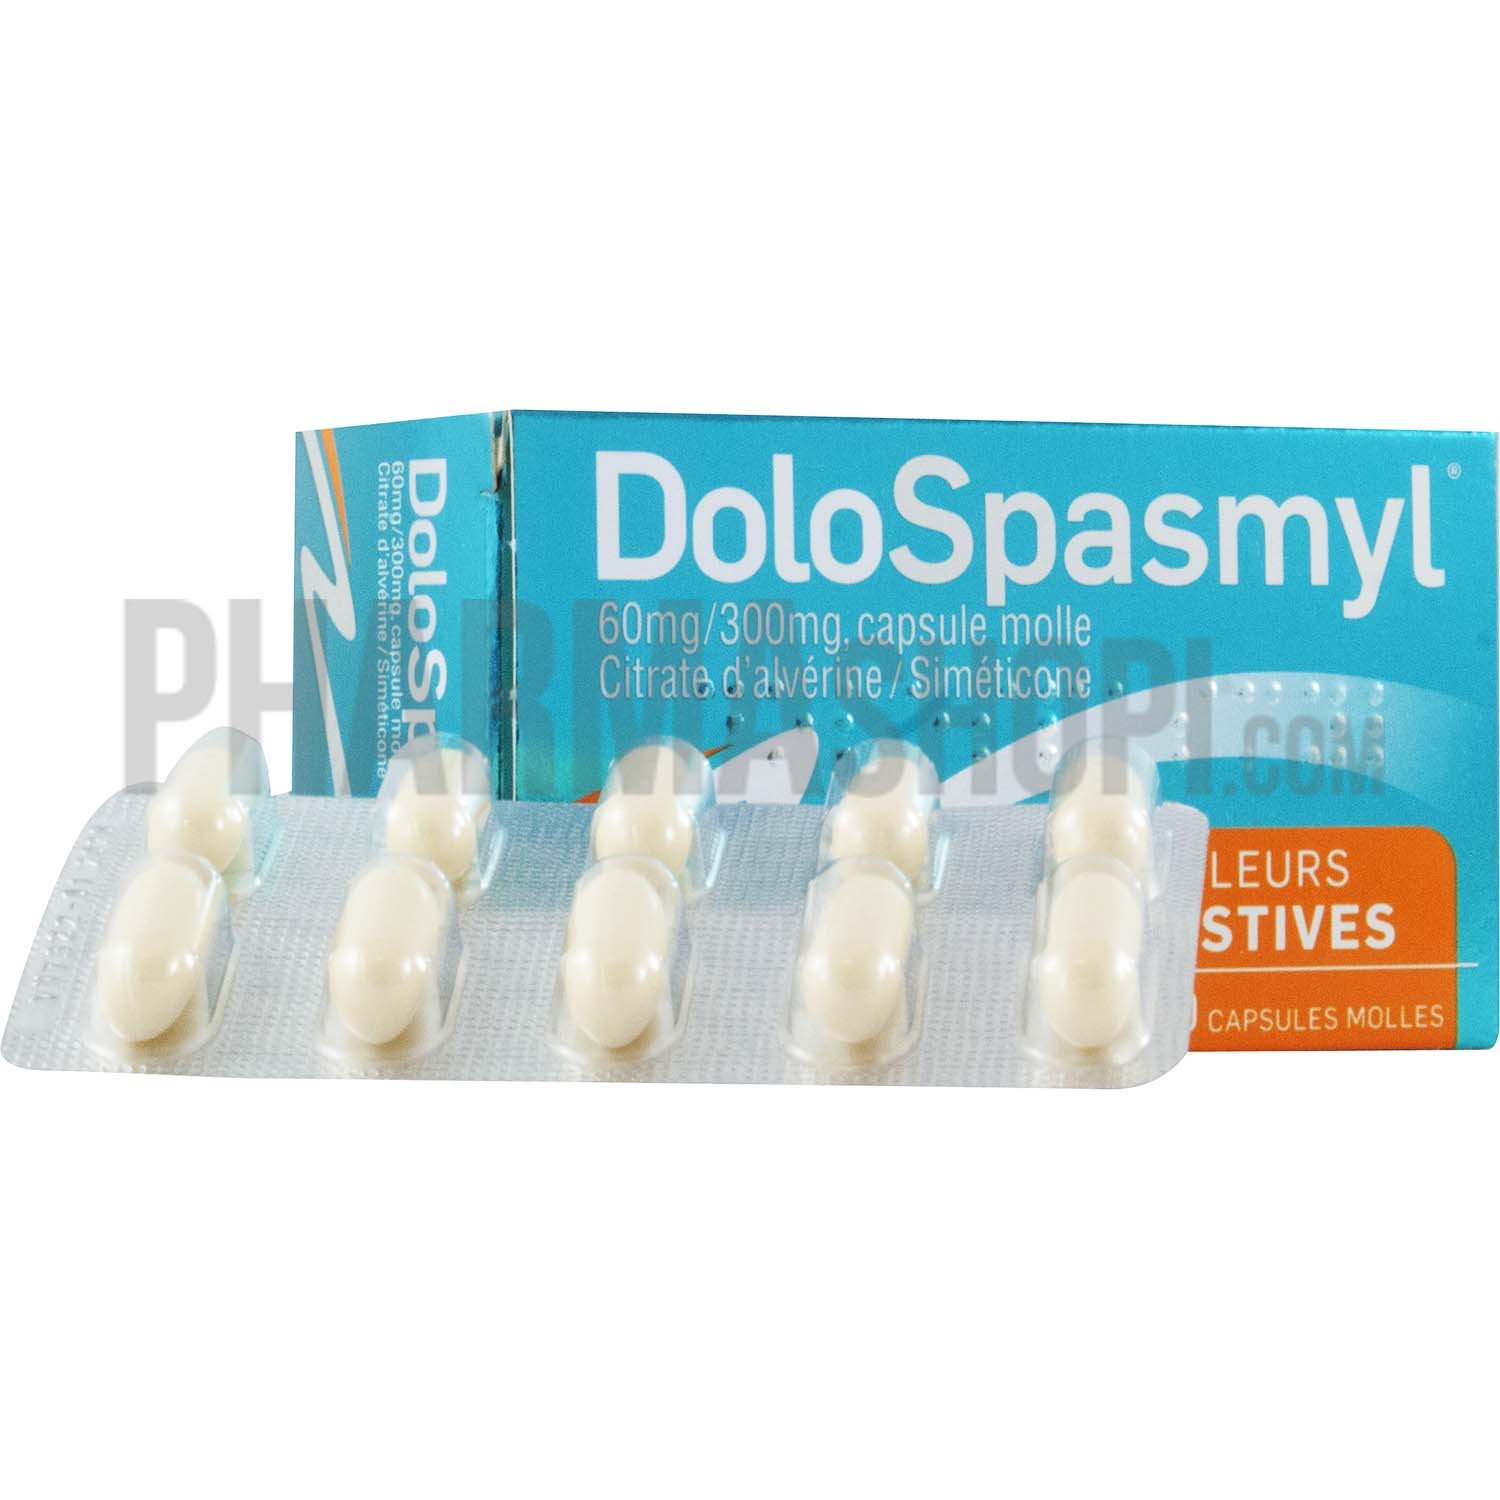 Dolospasmyl douleurs digestives - boite de 40 capsules